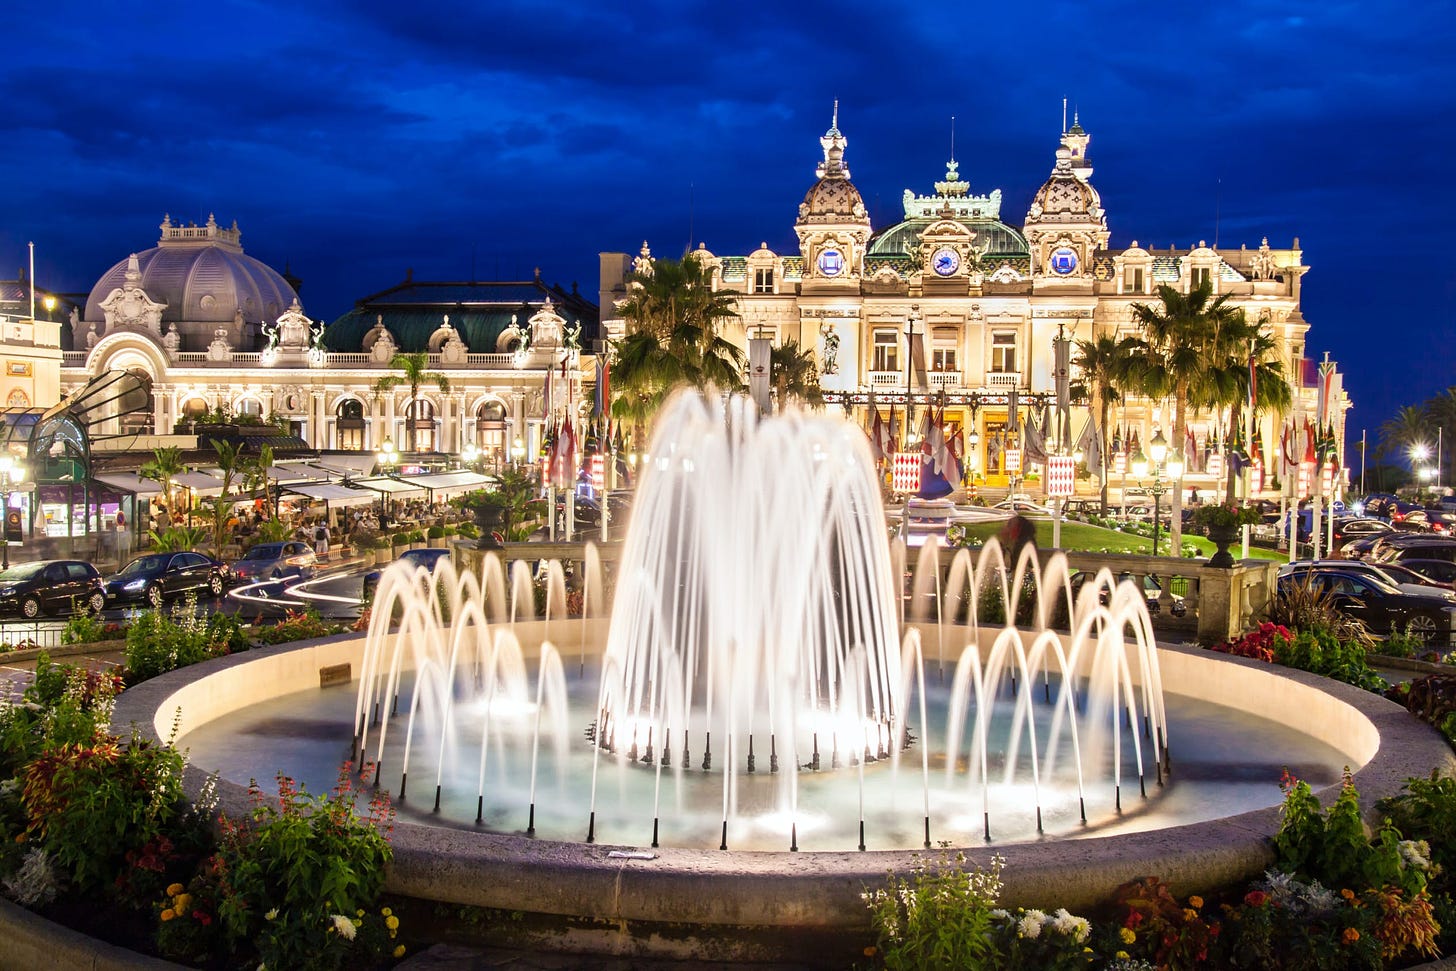 Casino de Monte Carlo | Monaco, Europe | Attractions - Lonely Planet